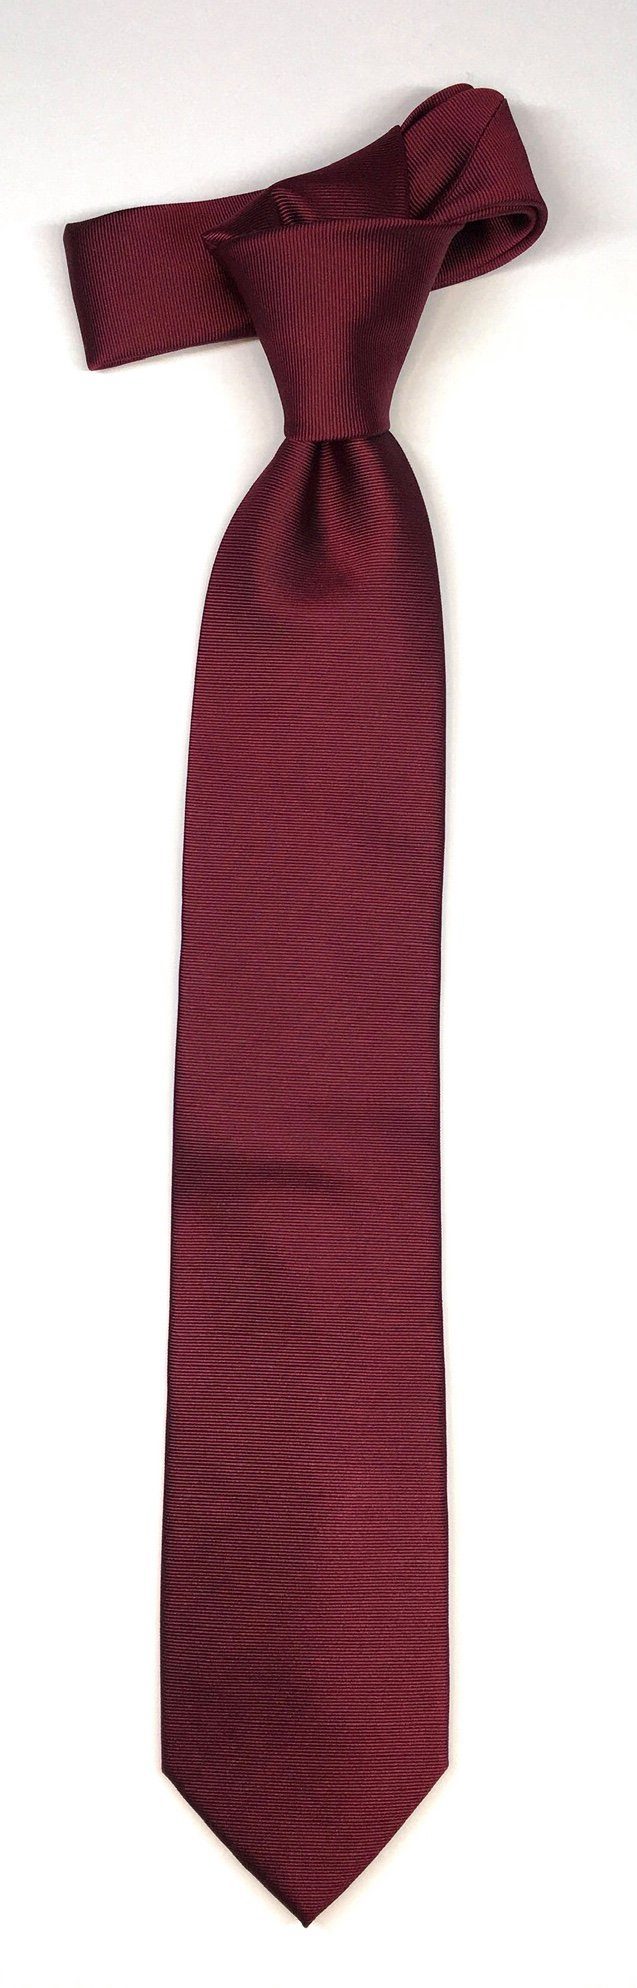 Krawatte edlen Seidenfalter Krawatte Wine Design Uni Seidenfalter Krawatte 7cm im Uni Seidenfalter